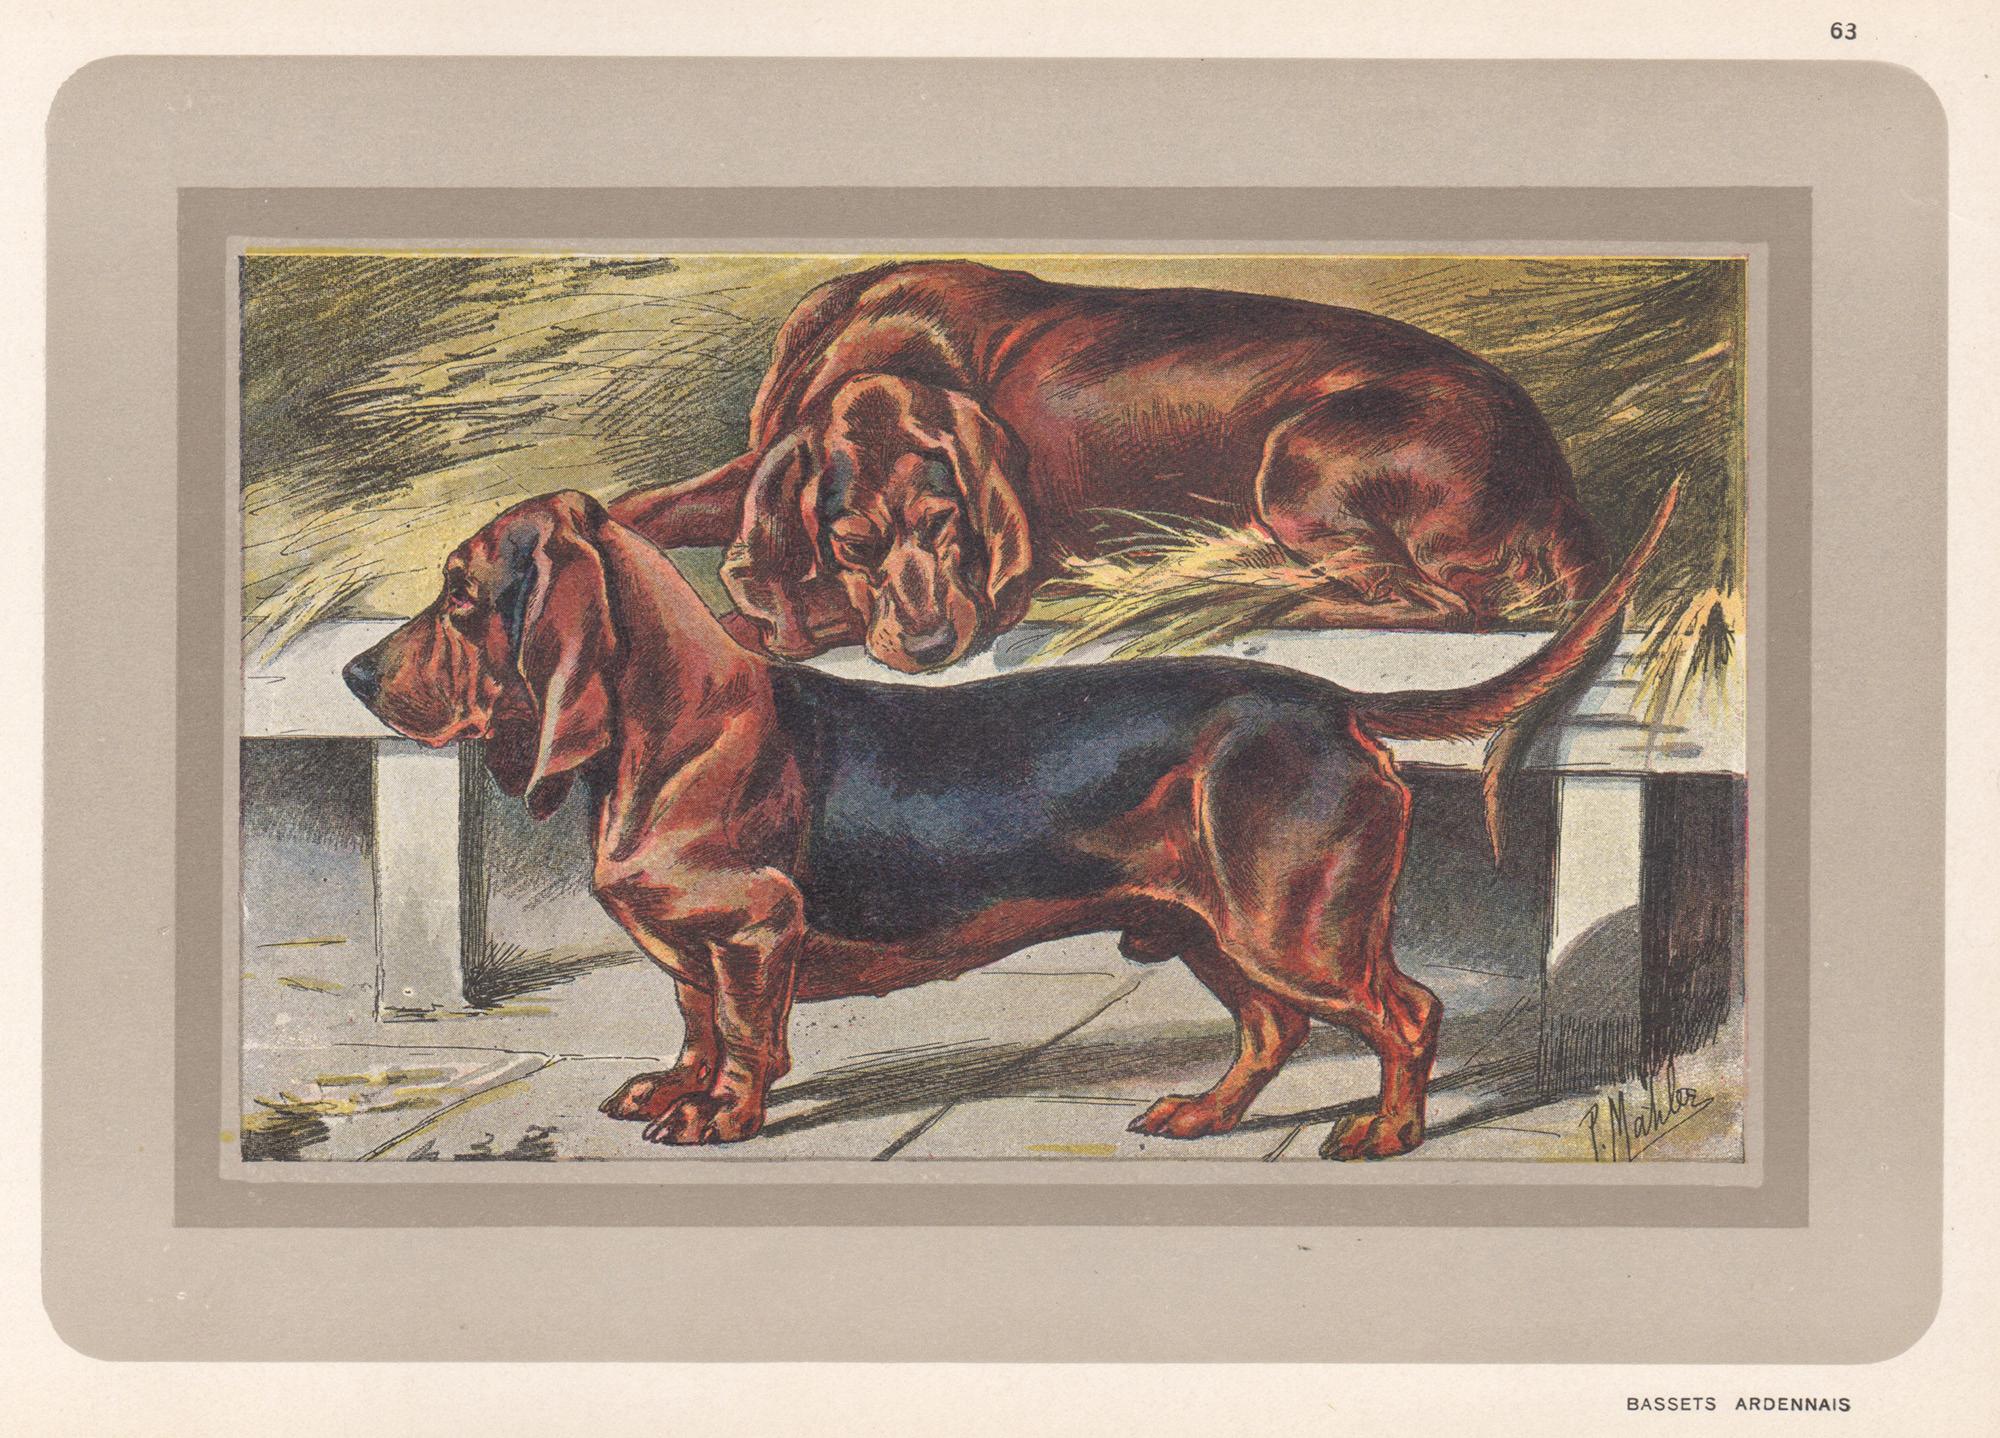 Animal Print P. Mahler - Bassets Ardennais, impression chromolithographie française d'un chien de chasse, années 1930